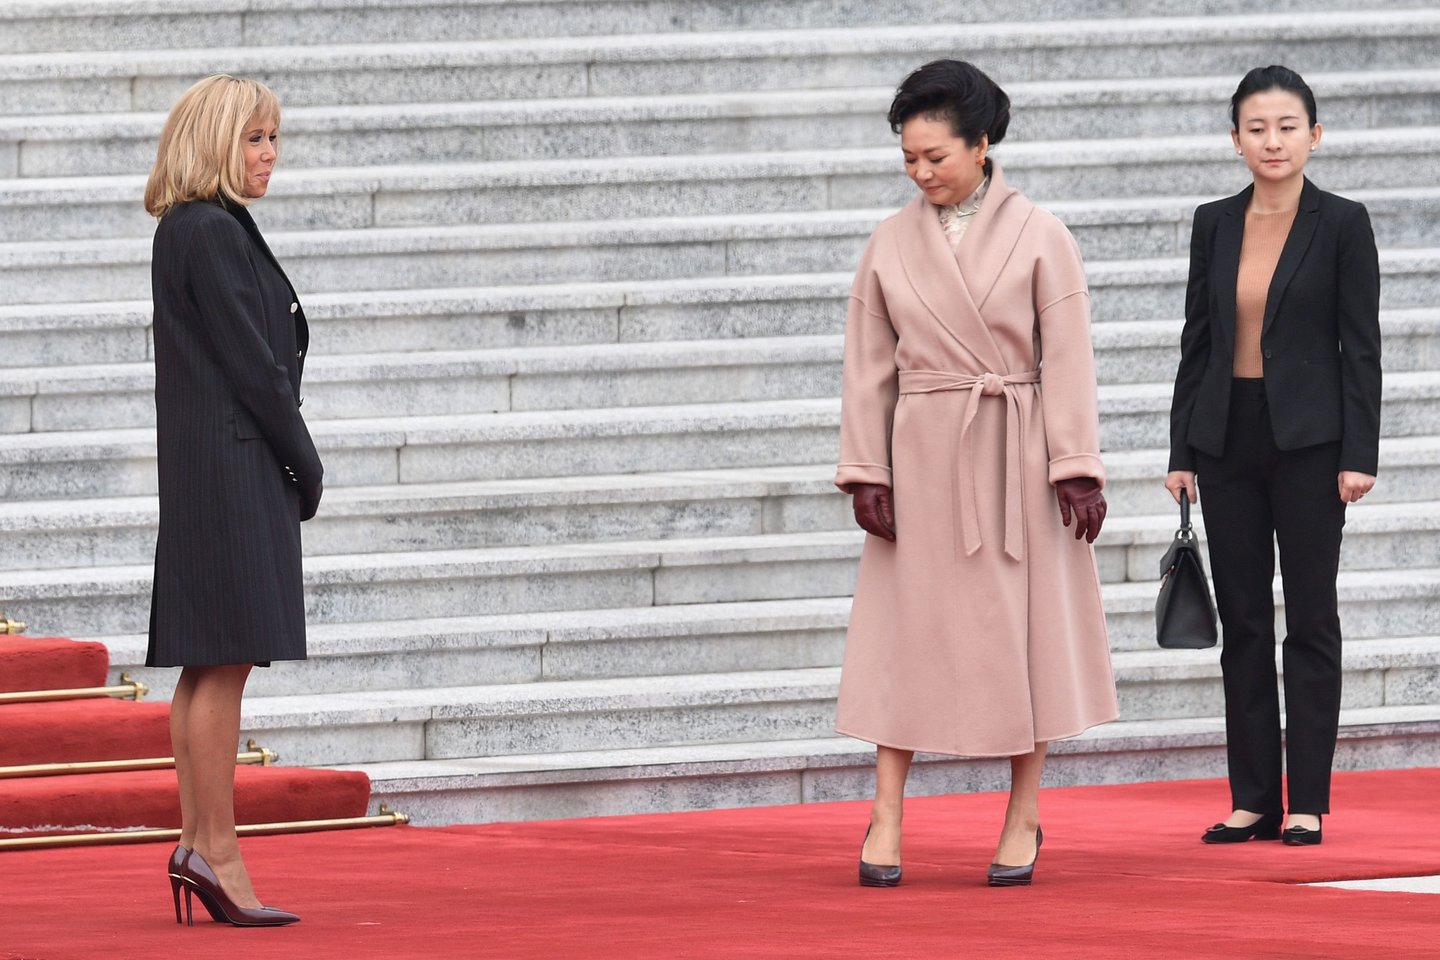  Kinijos ir Prancūzijos vadovų susitikimas.<br> Scanpix nuotr.